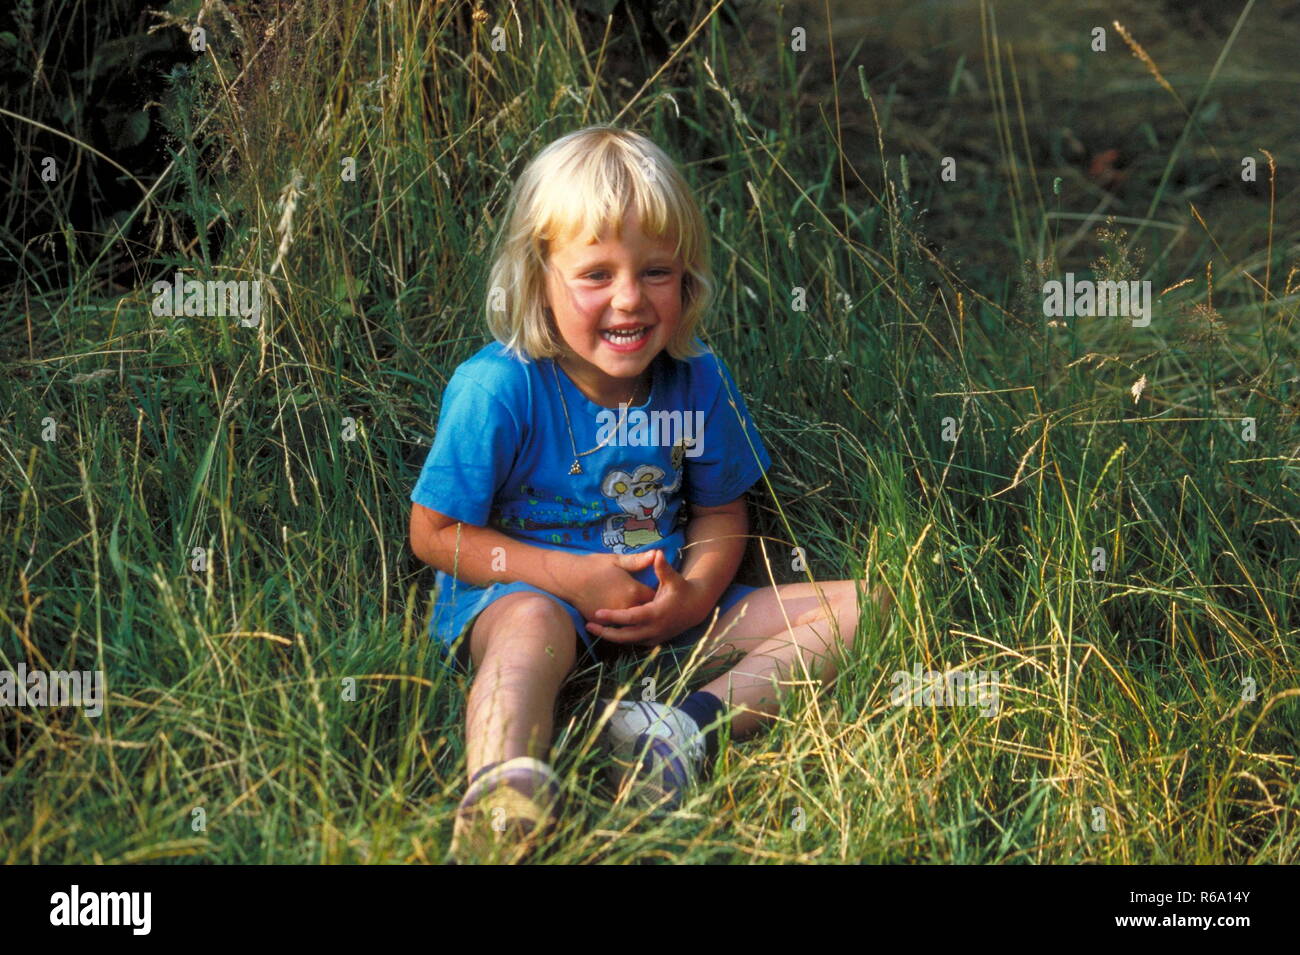 Ritratto, bionde Maedchen, 3 Jahre, bekleidet mit blauem T-Shirt, lachend sitzt im hohen gruenen Gras Foto Stock